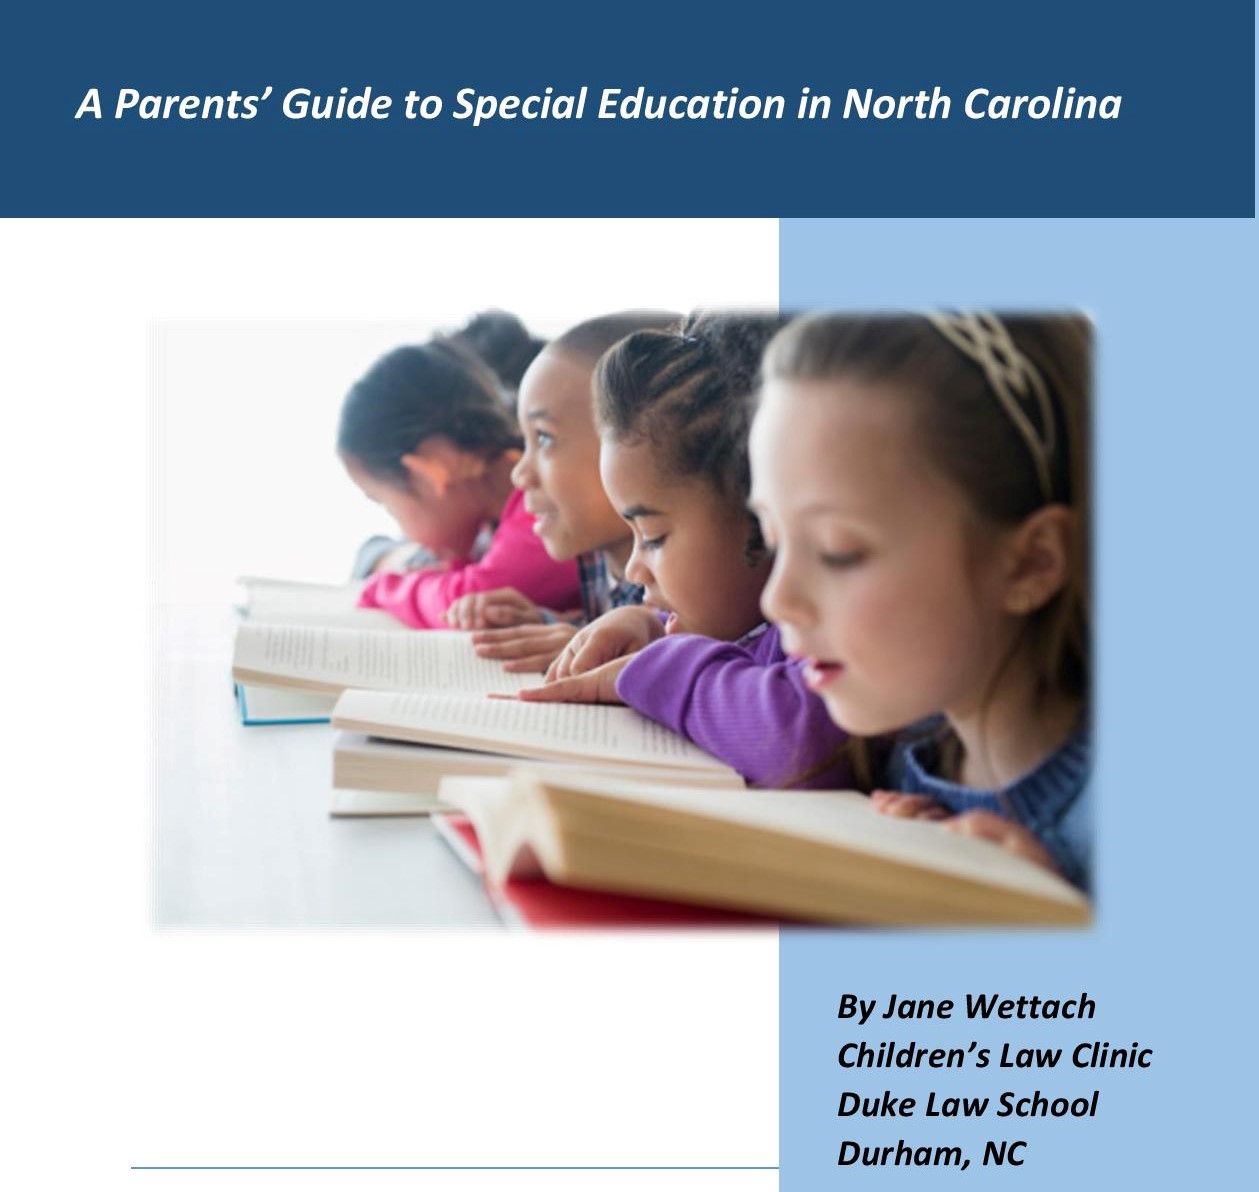 صورة للأطفال يقرأون بنص يقول دليل الآباء للتعليم الخاص في ولاية كارولينا الشمالية